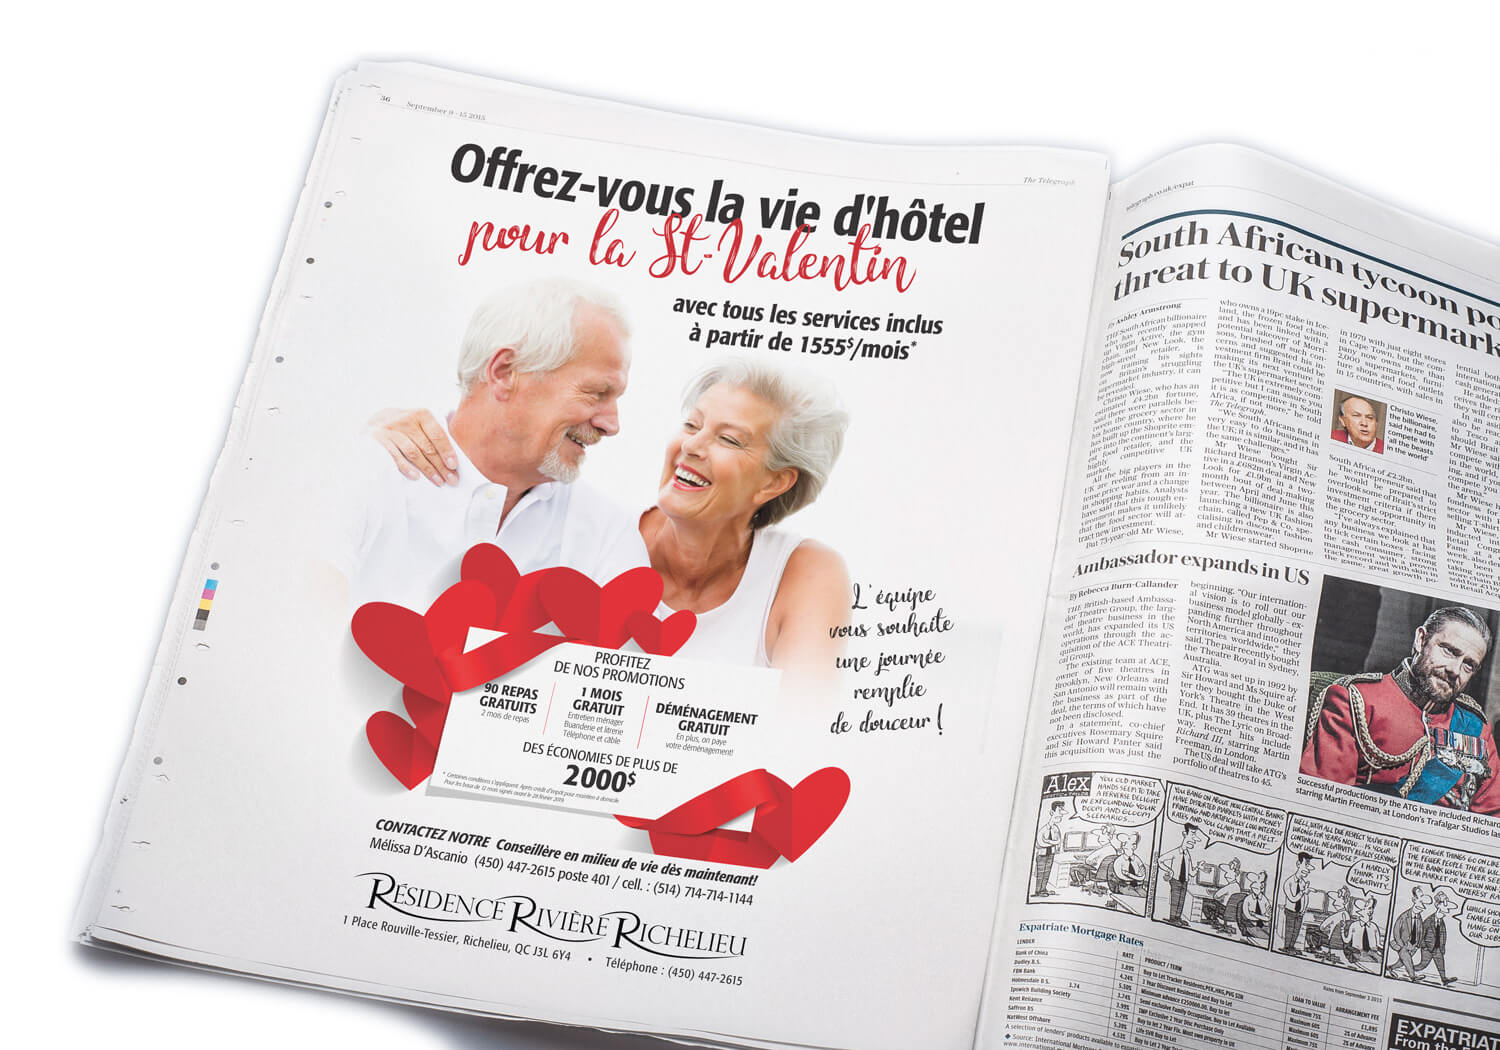 Publicité pour la promotion «Offrez-vous la vie d'hôtel...» pour la Résidence Rivière Richelieu de St-Jean-sur-le-Richelieu, maison de retraite pour personnes aînées.